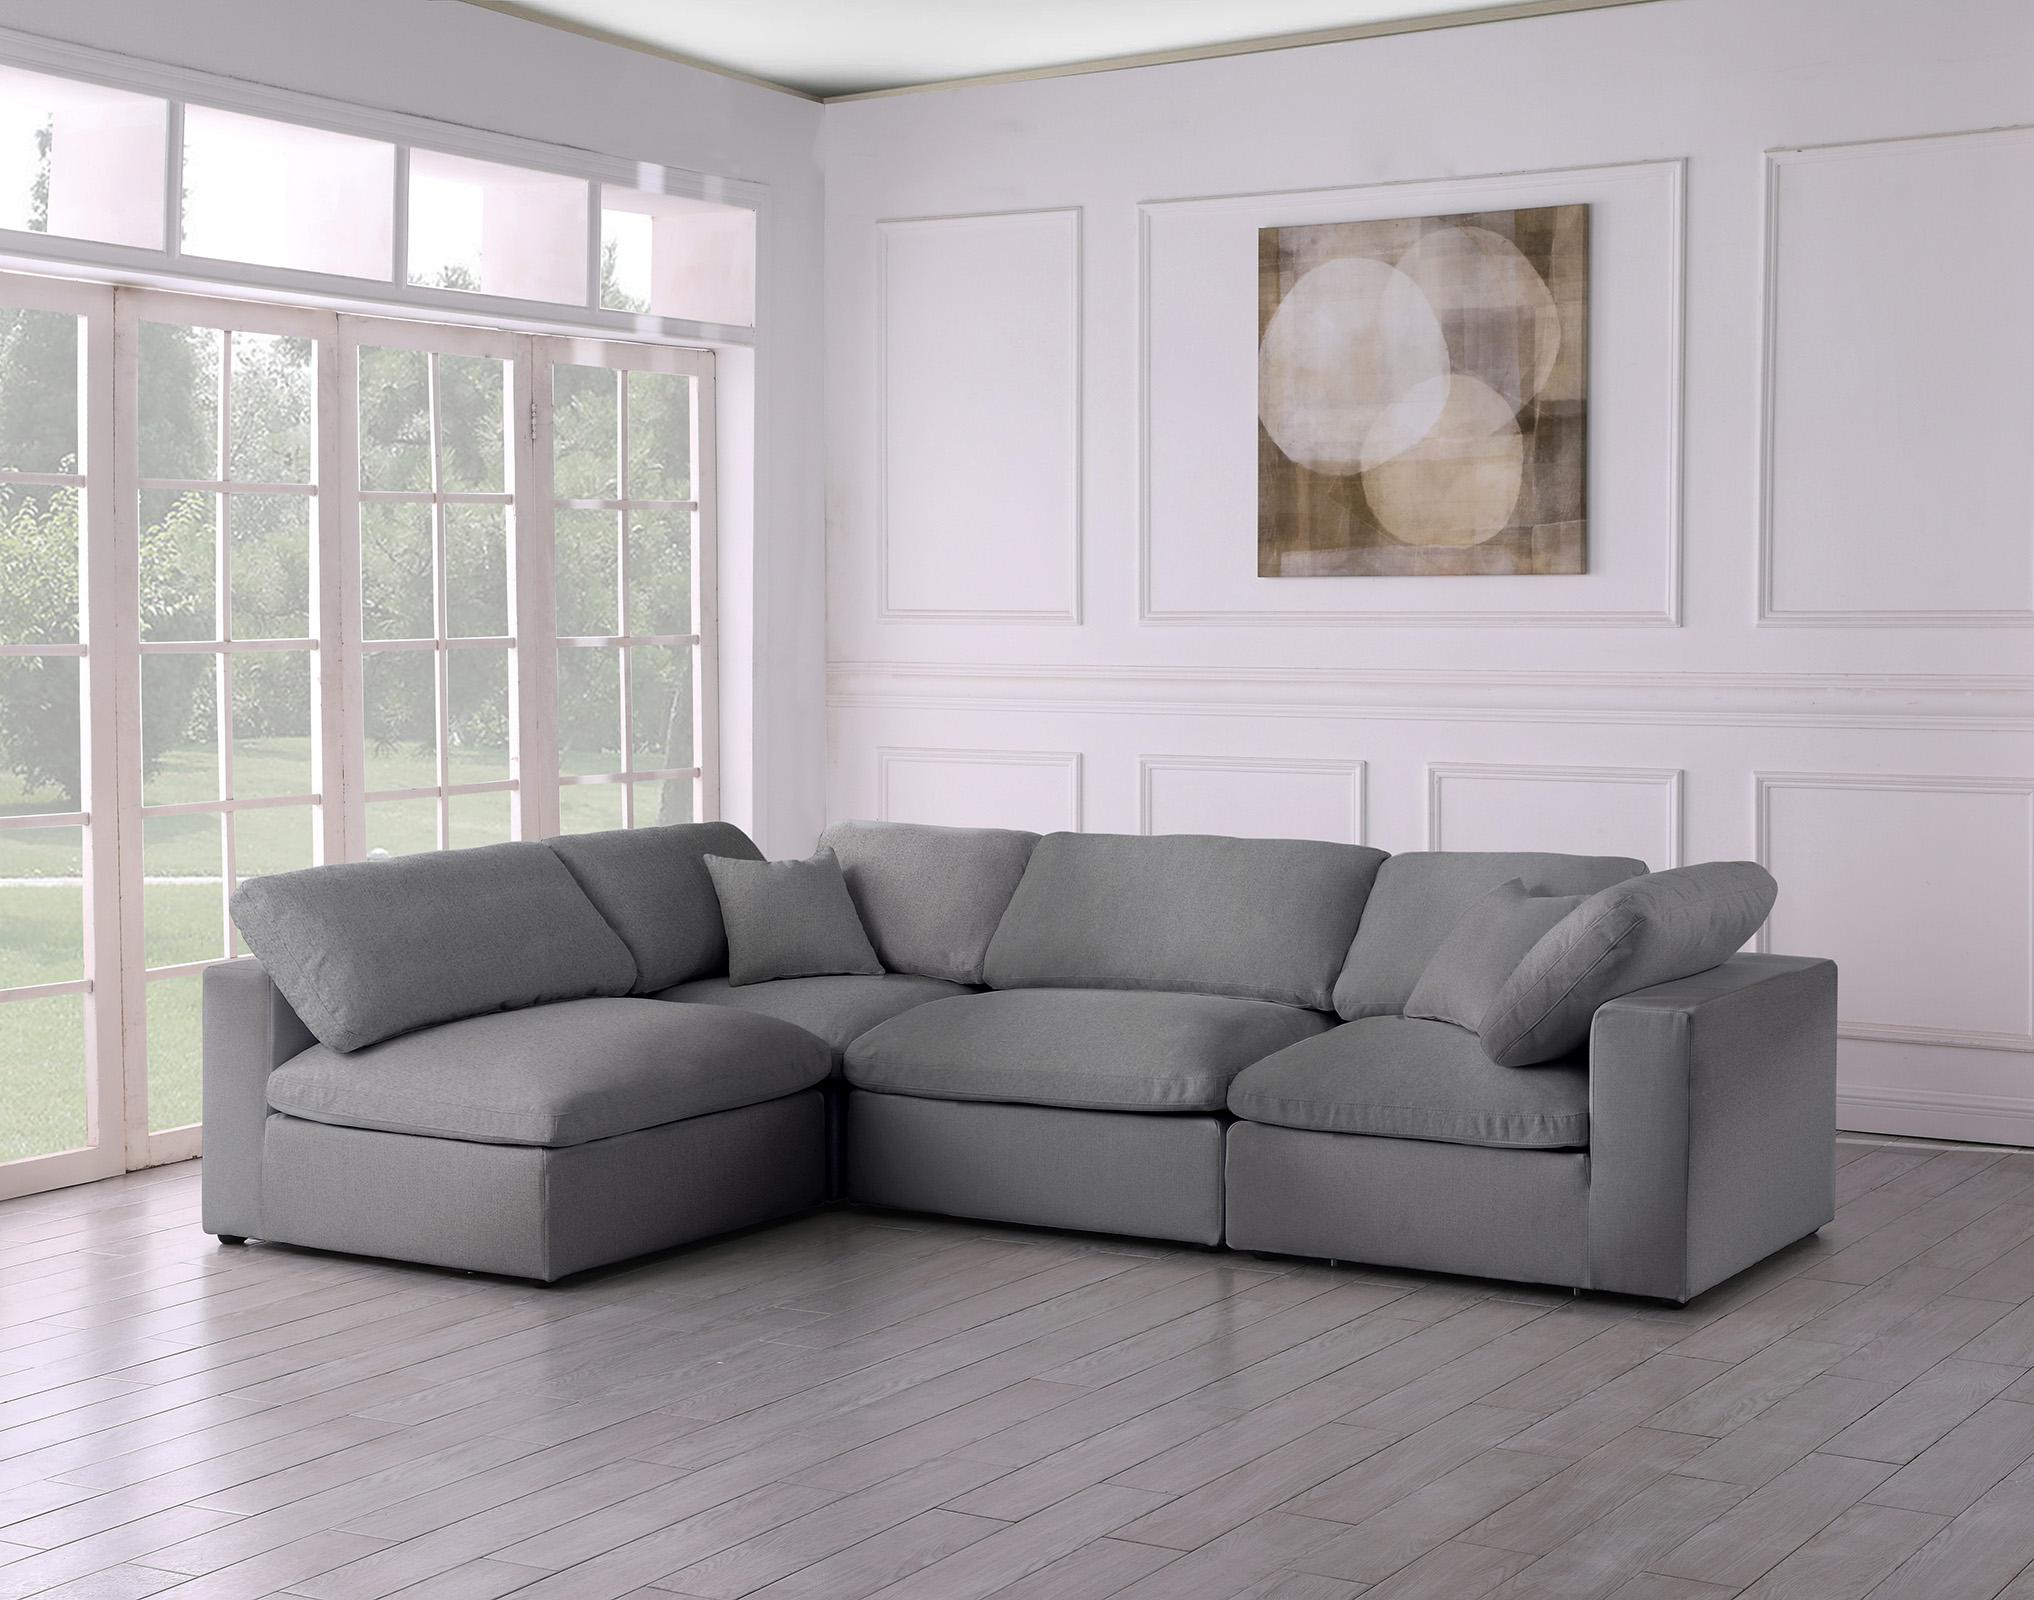 

    
Meridian Furniture SERENE 601Grey-Sec4B Modular Sectional Gray 601Grey-Sec4B
